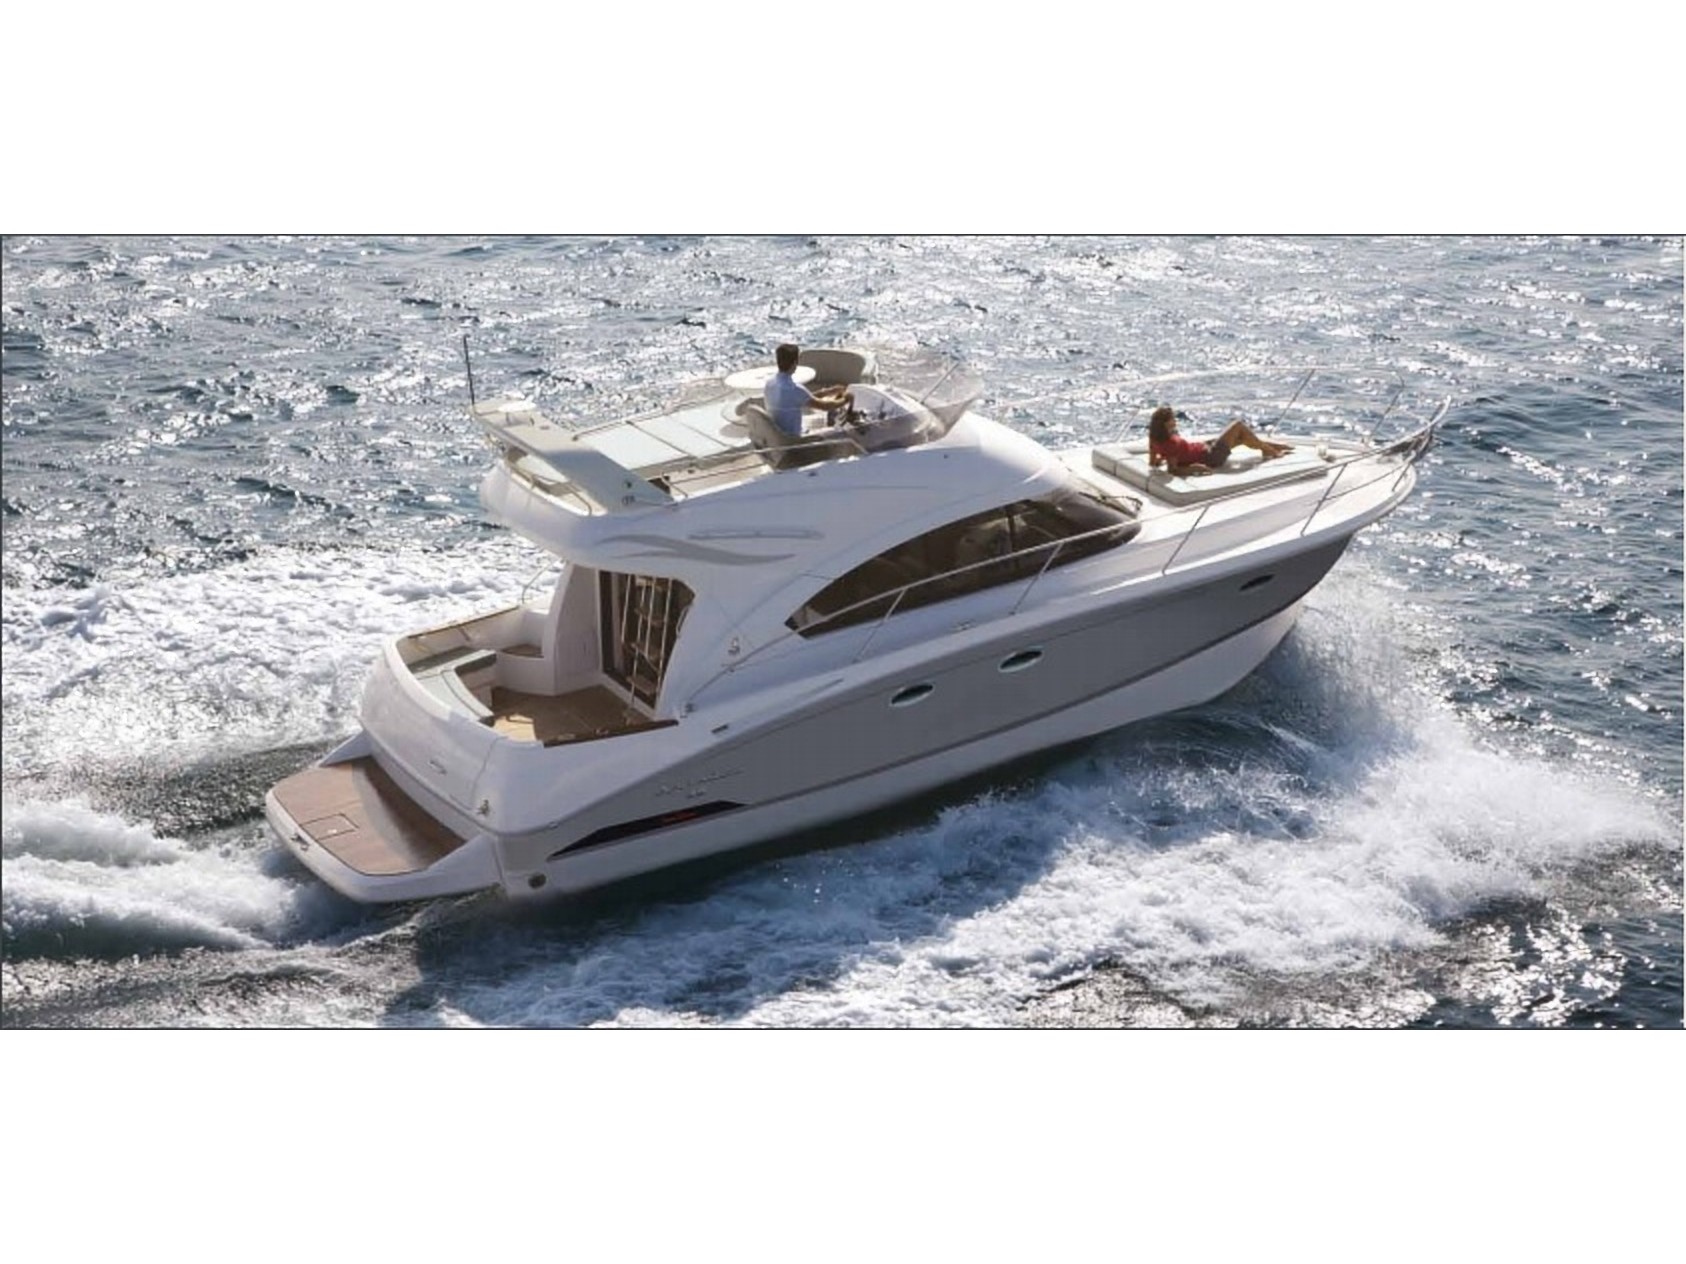 Antares 36 - Gulet rental worldwide & Boat hire in Croatia Split-Dalmatia Split Split Marina Nava 1